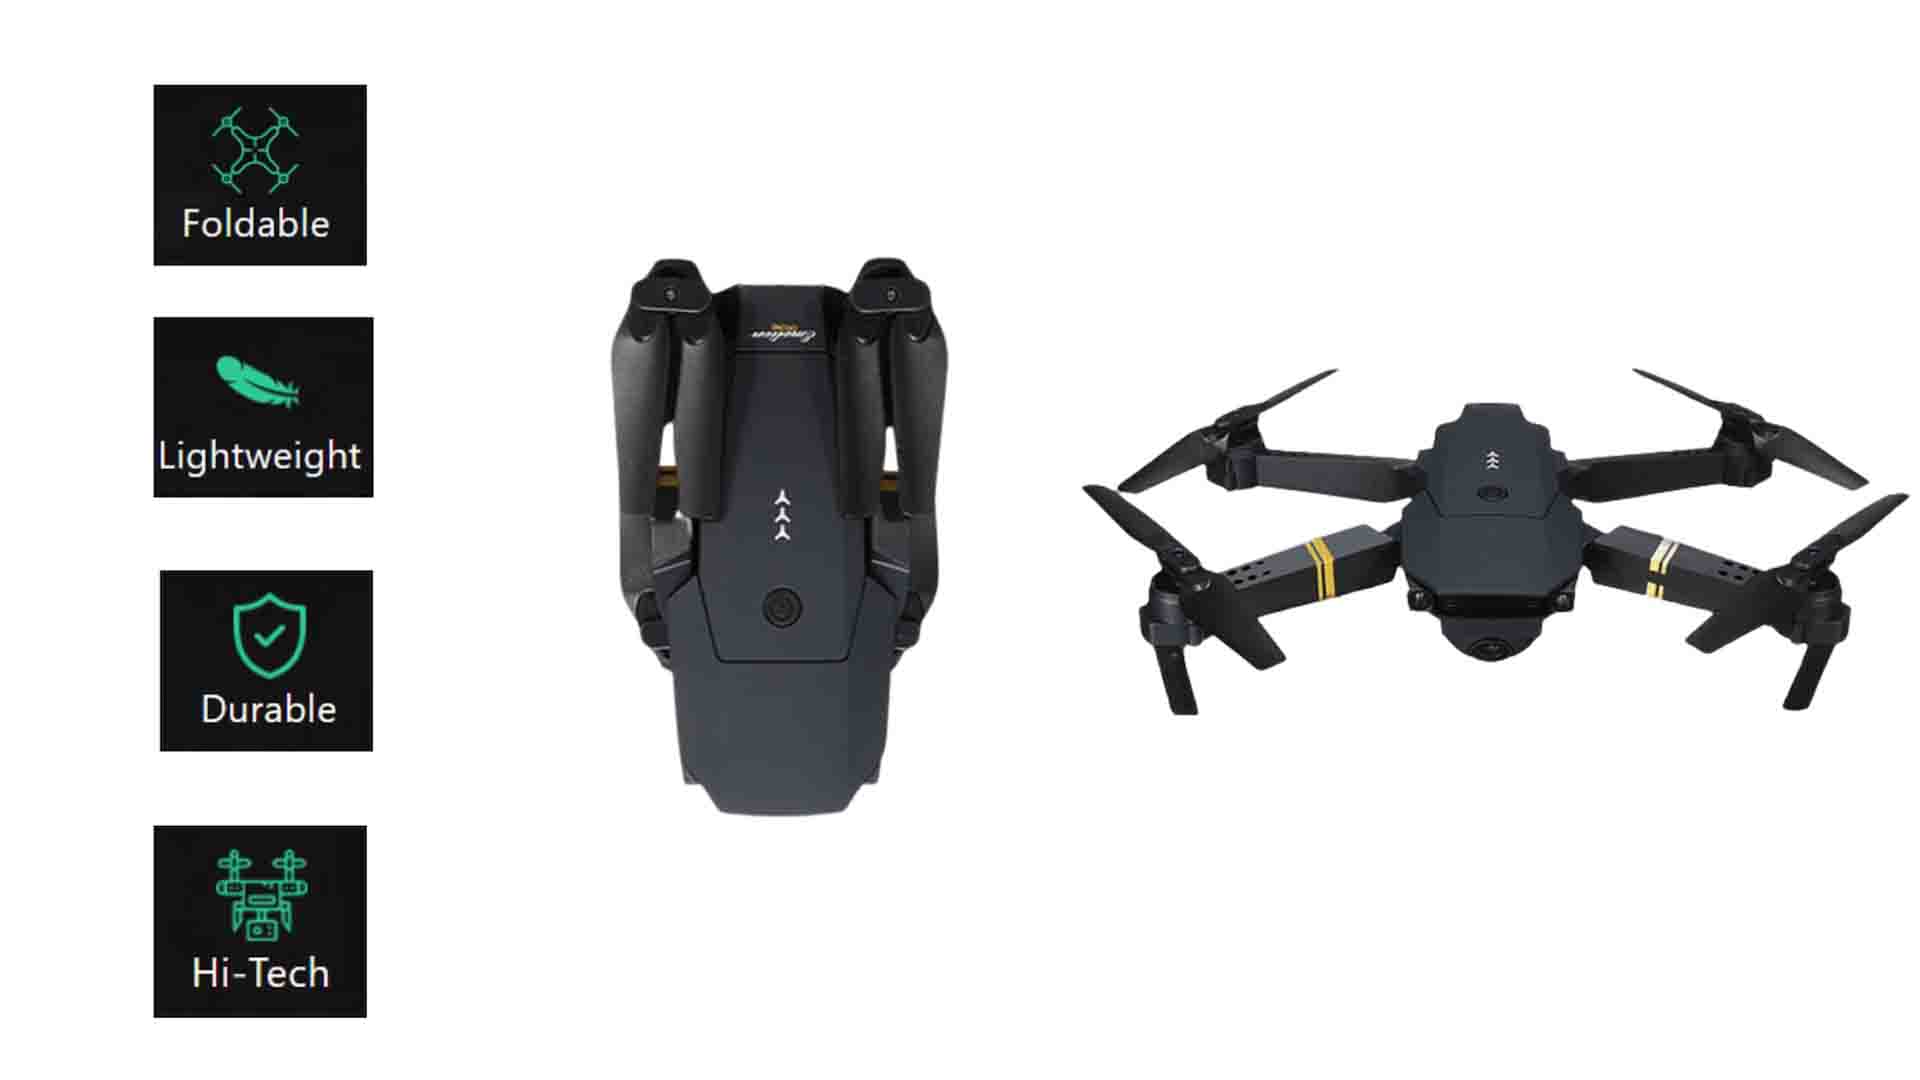 quad air drone, quad air drone review, quad air drone amazon, quad air drone price, Quadair drone video, best lipo Battery